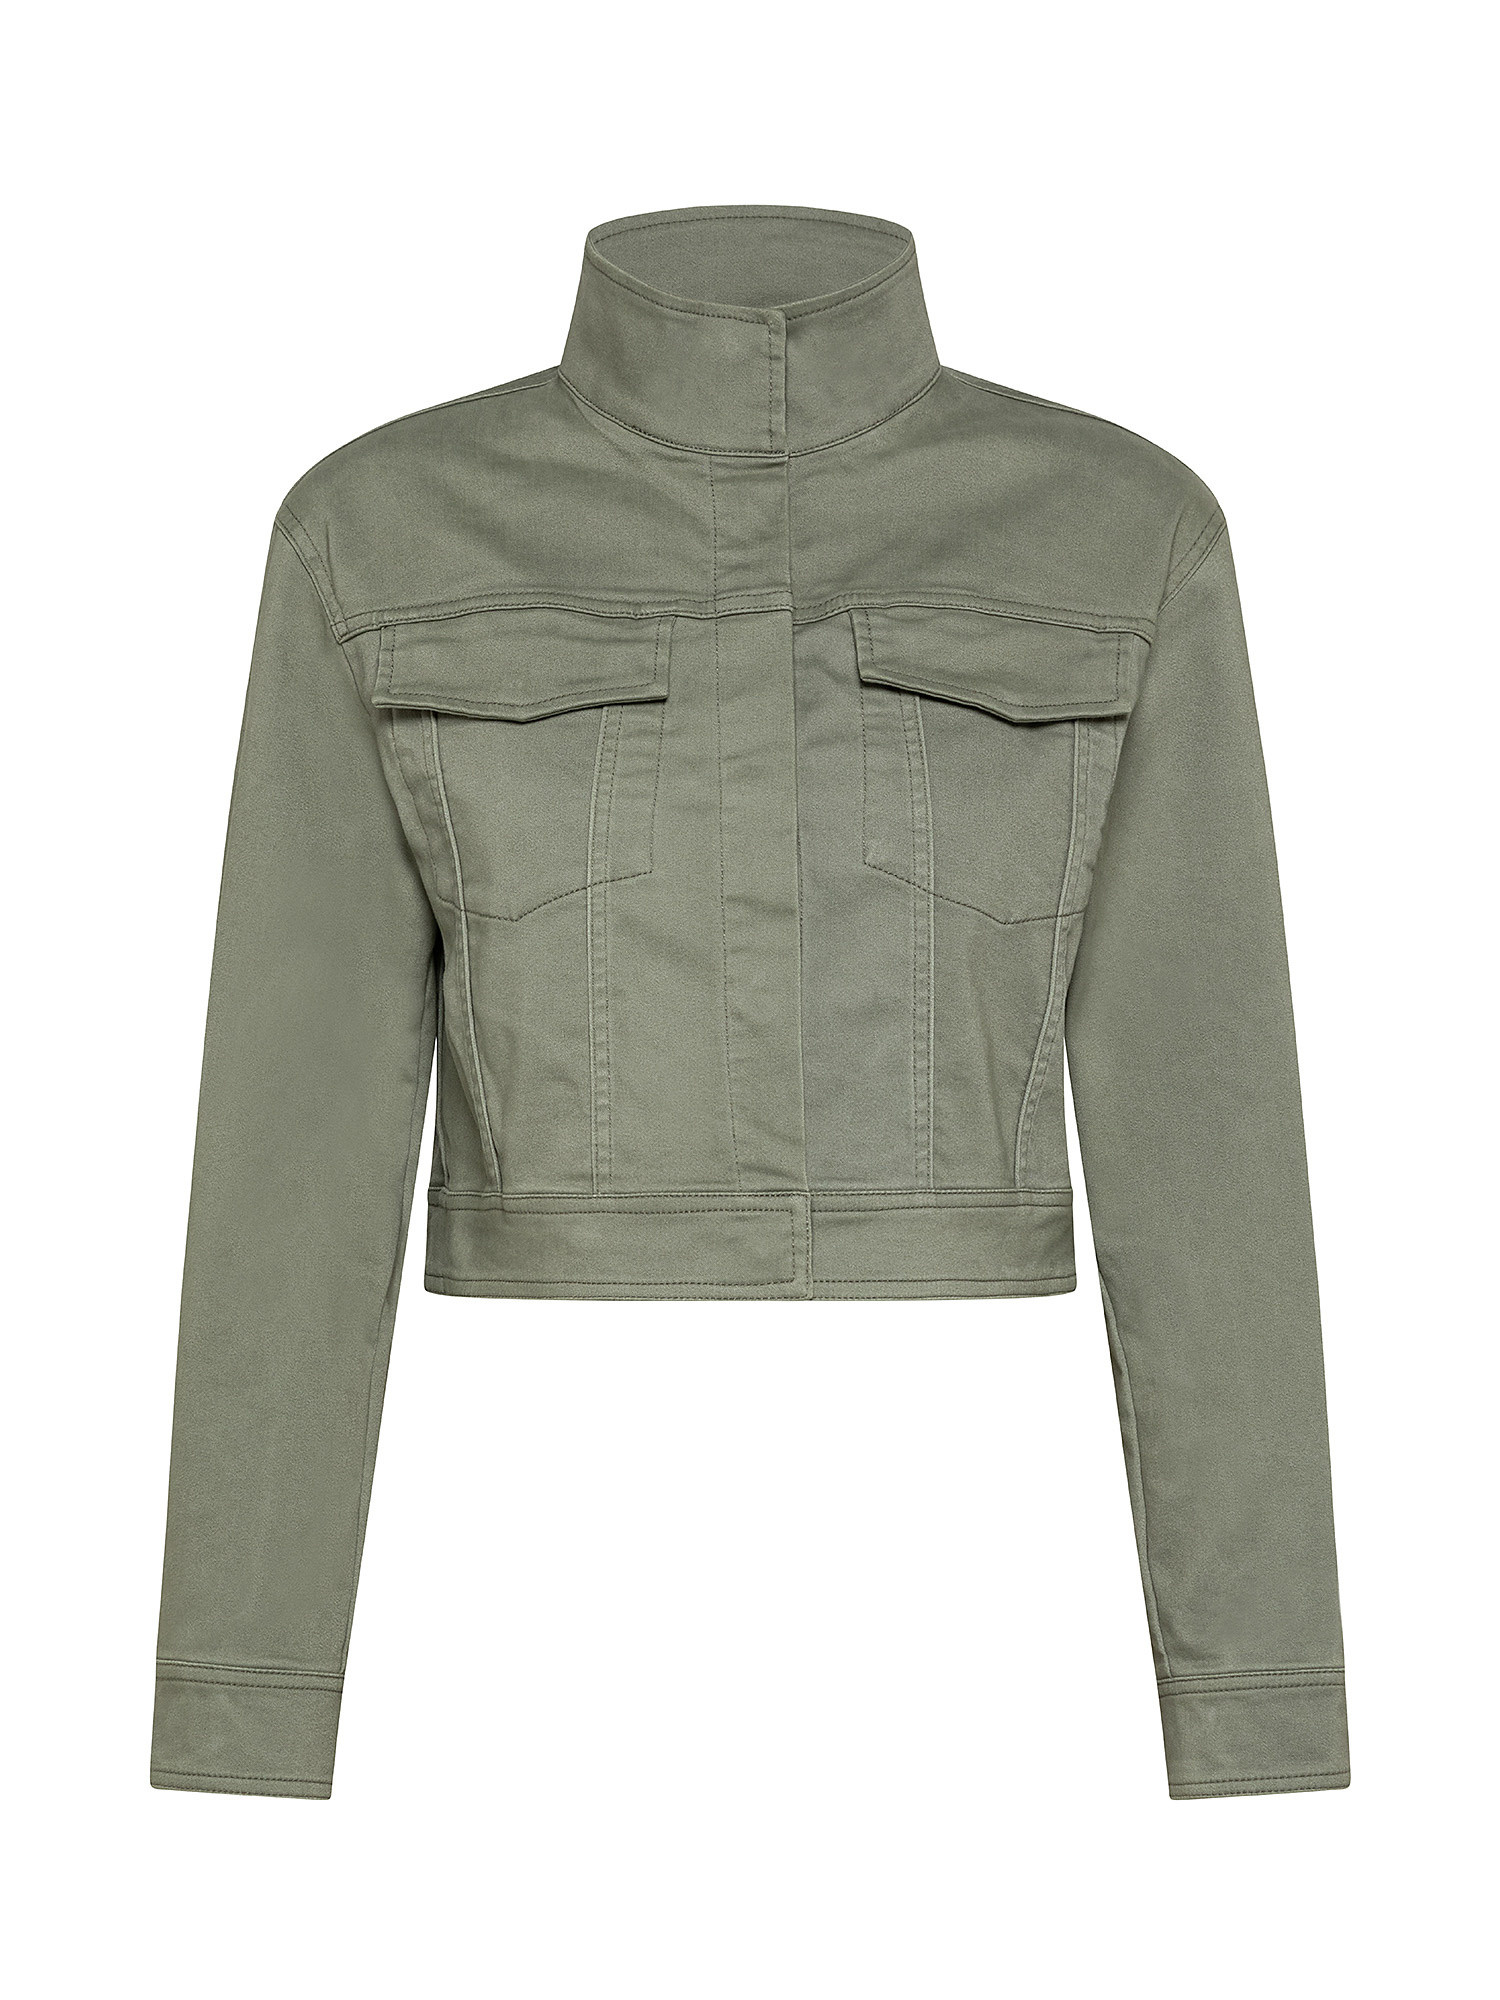 Jacket, Olive Green, large image number 0